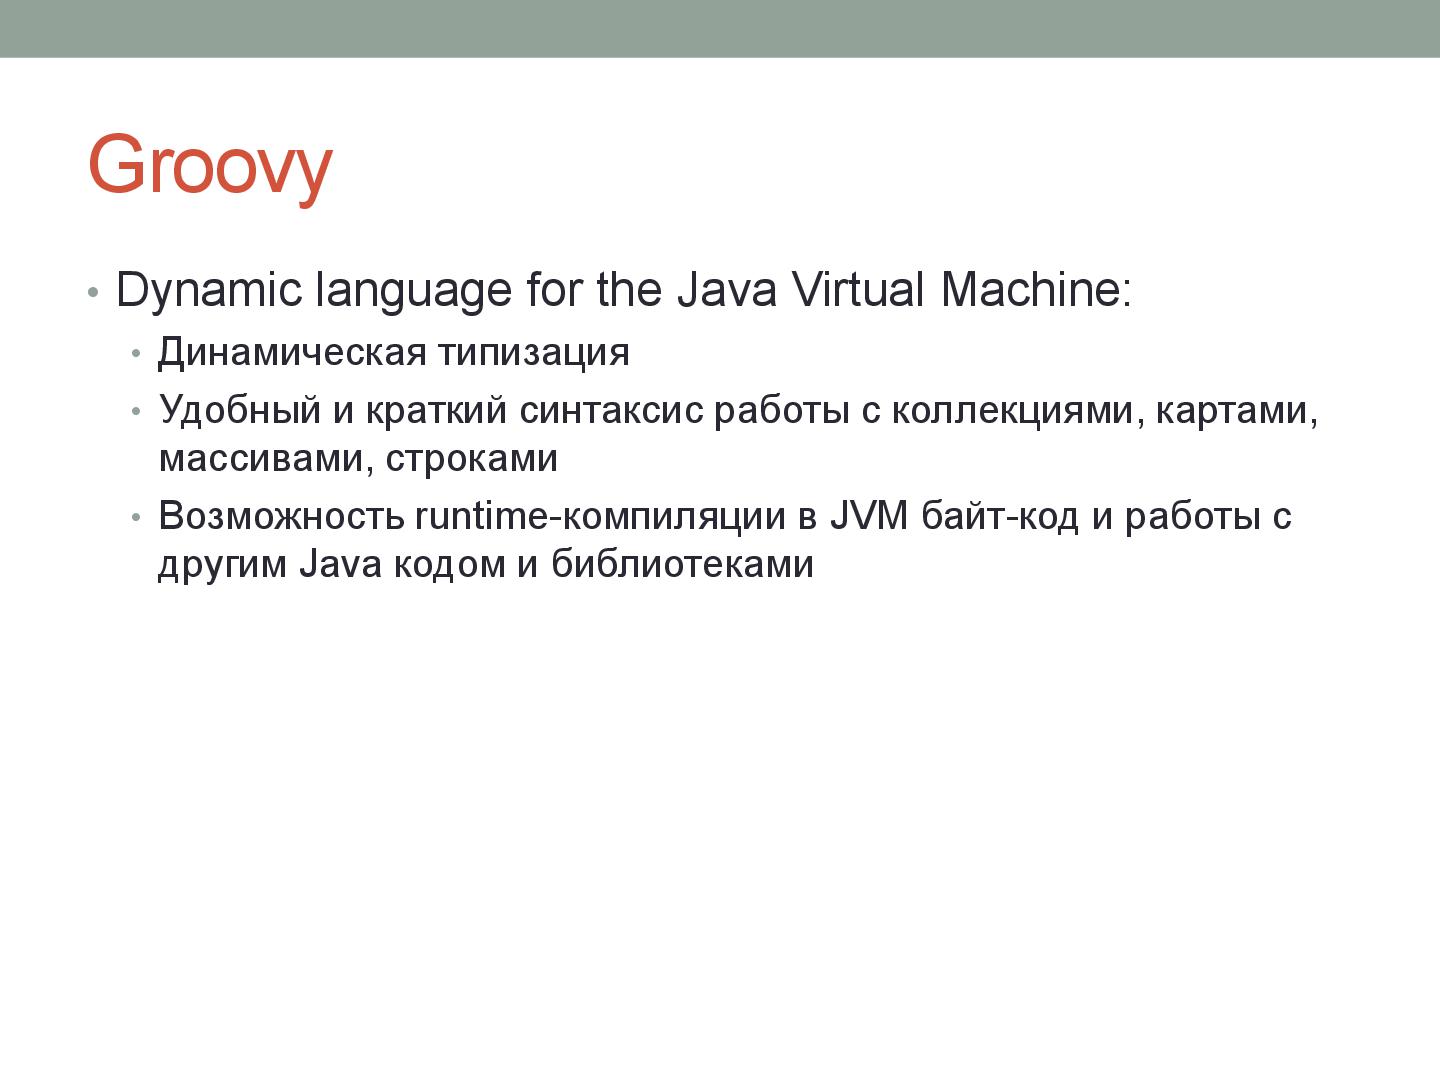 Файл:Система обработки бизнес-логики server-side приложения на Groovy (Александр Шлянников, ADD-2012).pdf